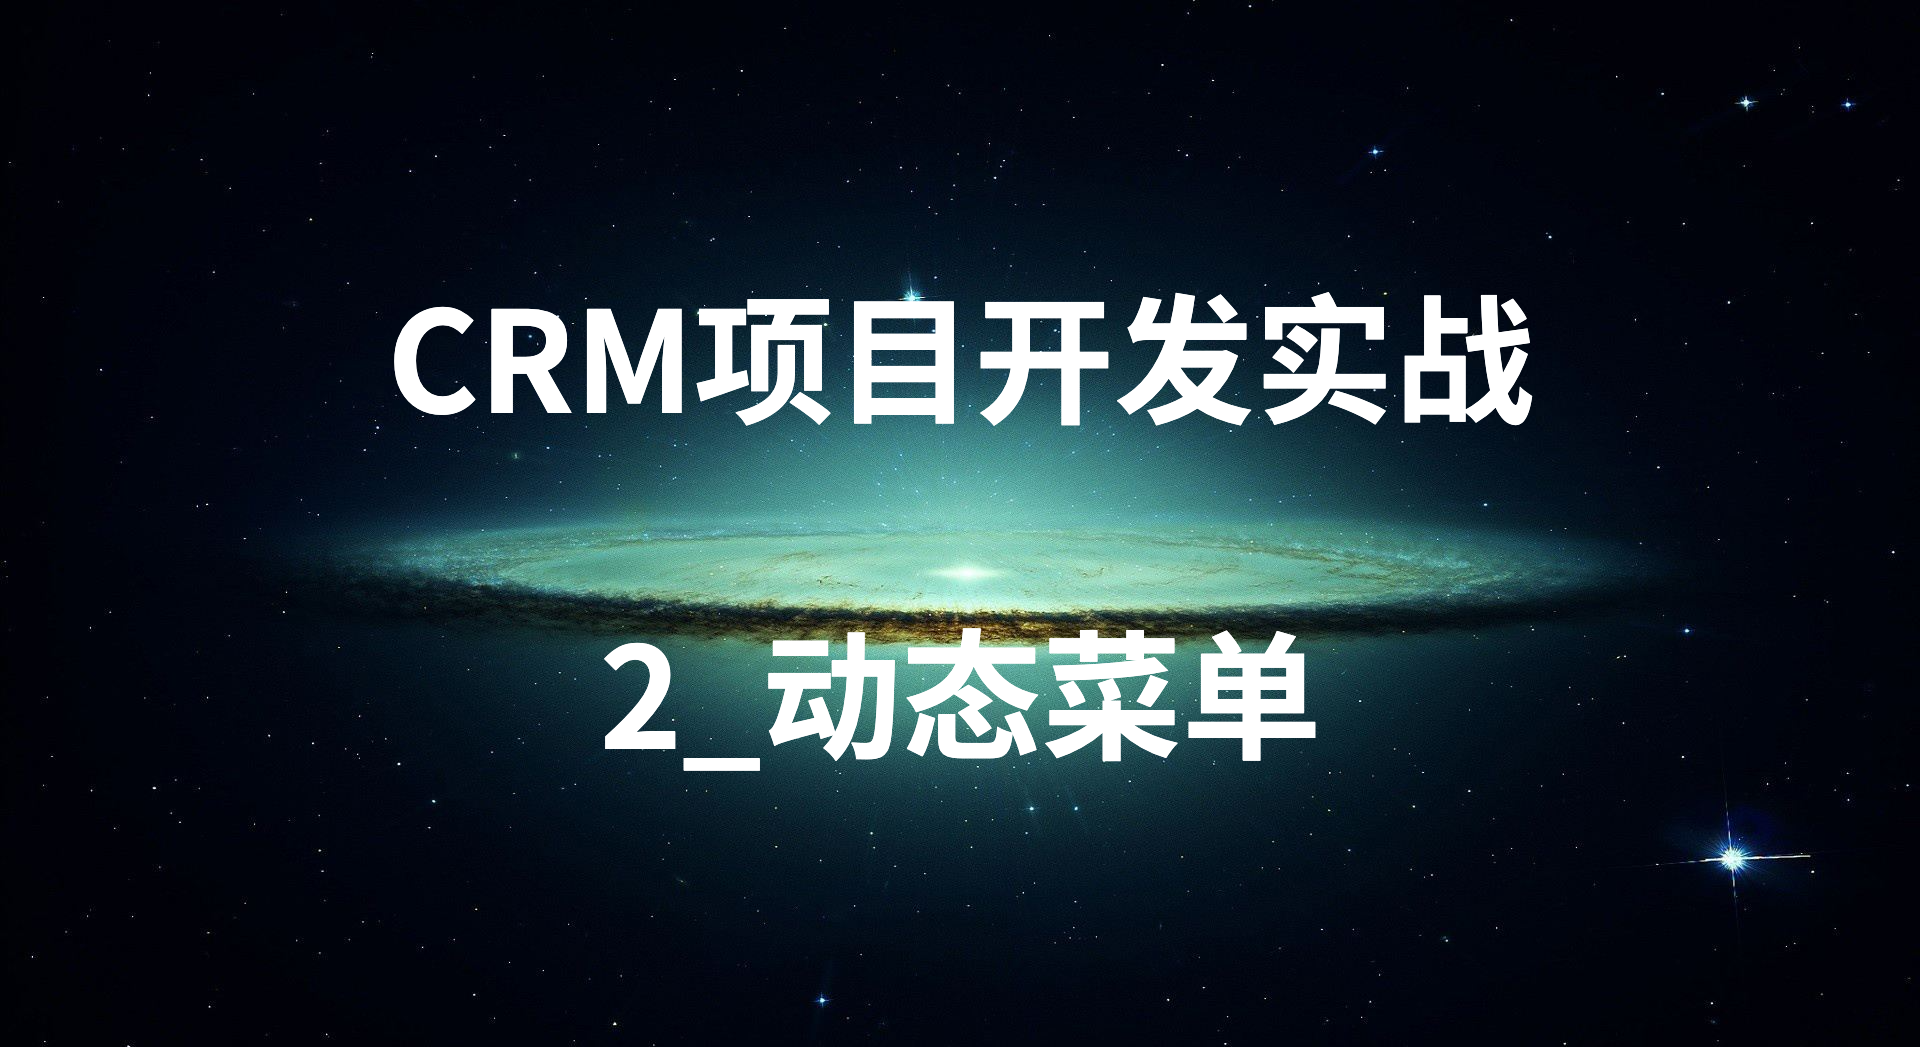 CRM项目开发实战-2_动态菜单